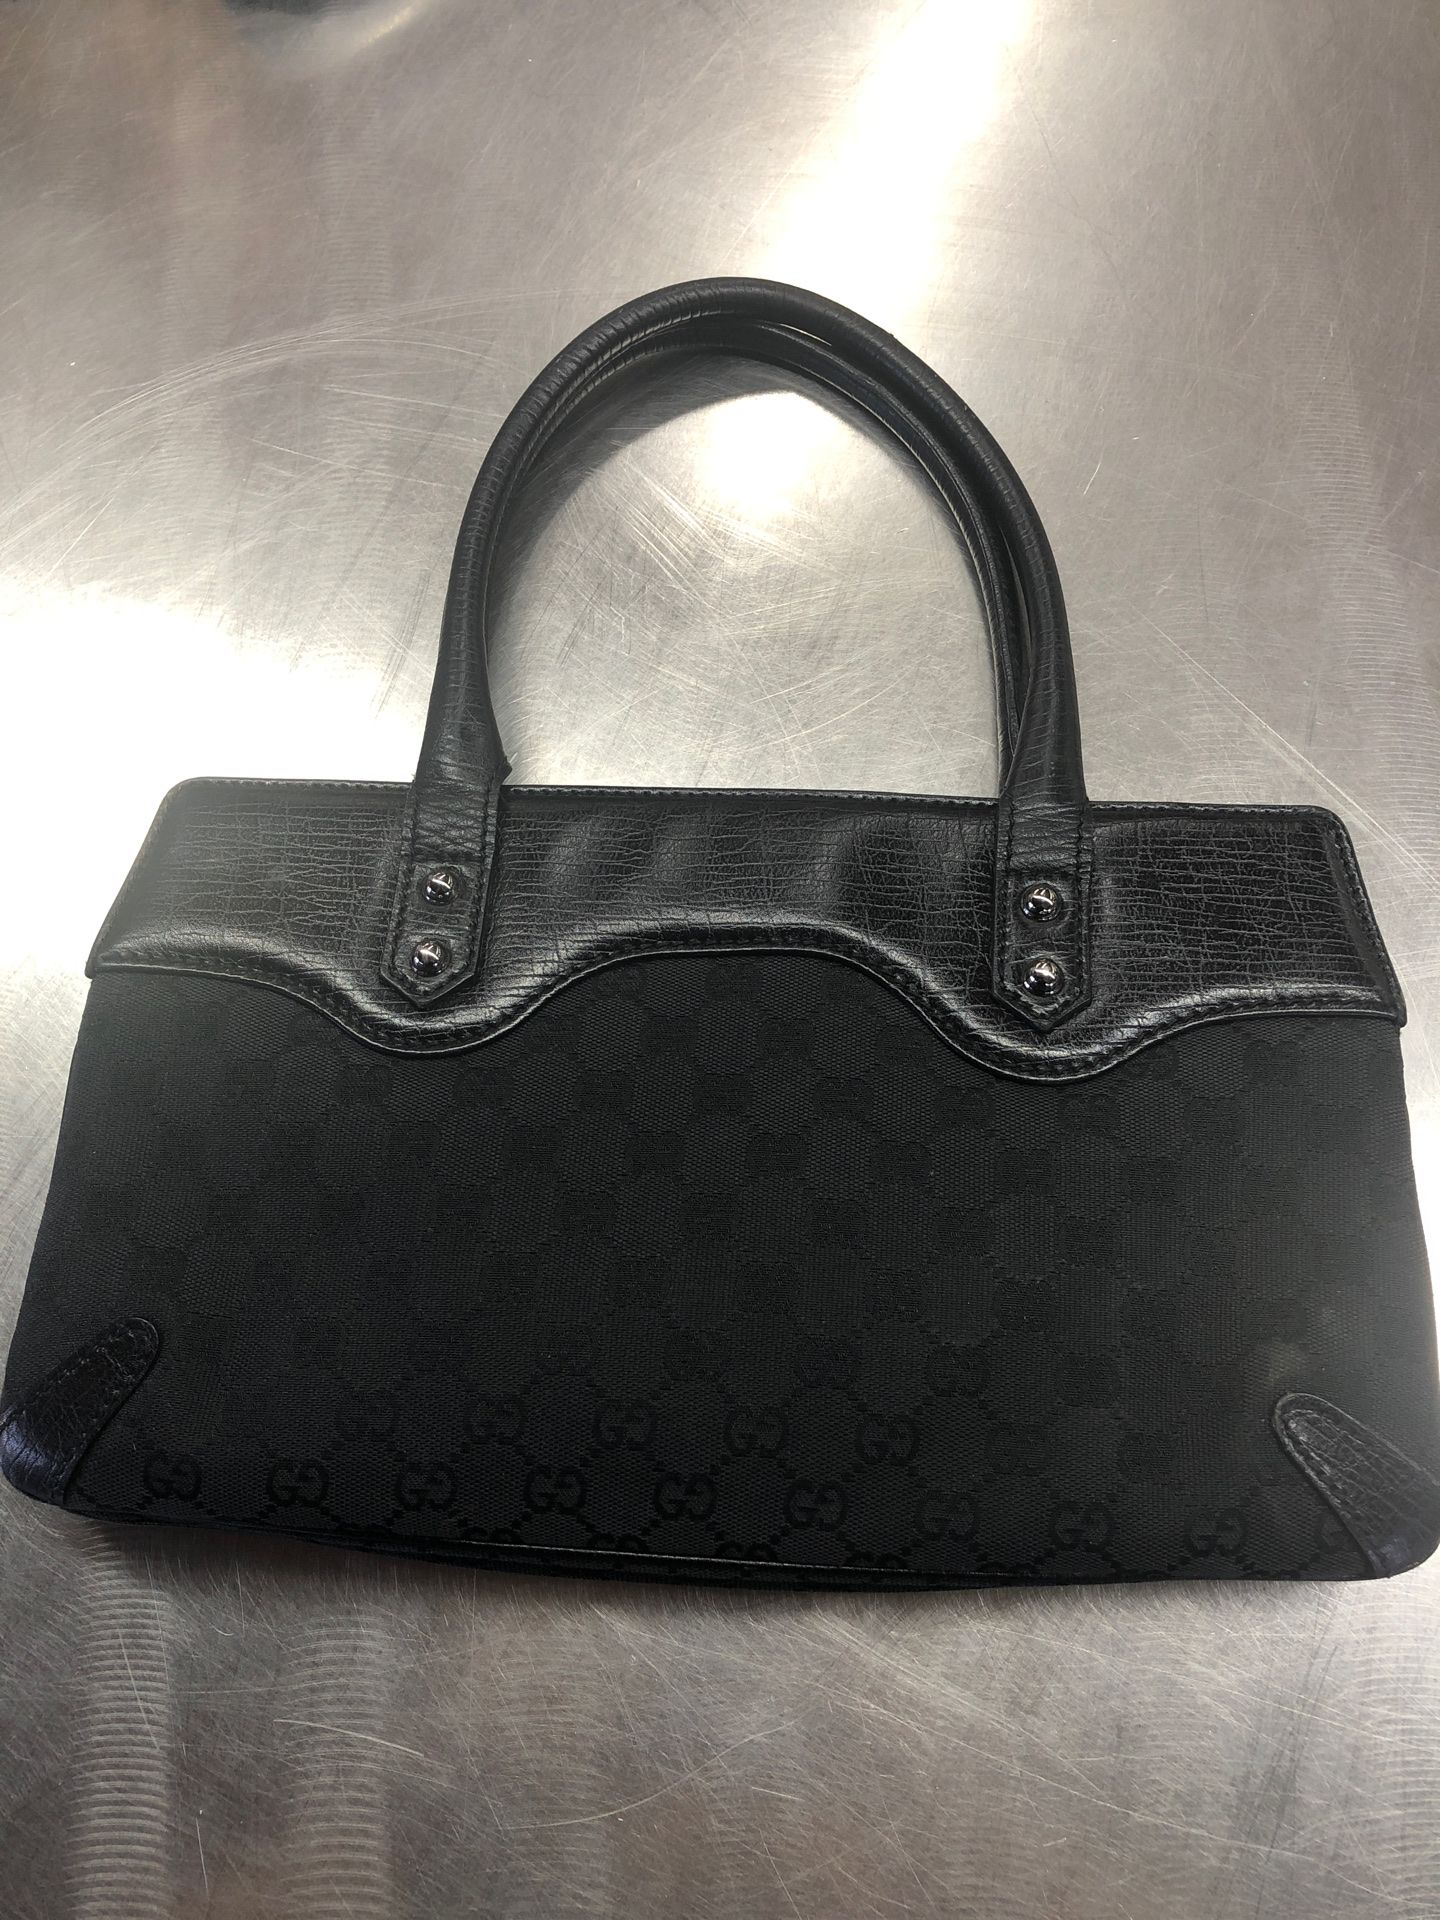 Gucci vintage black handbag